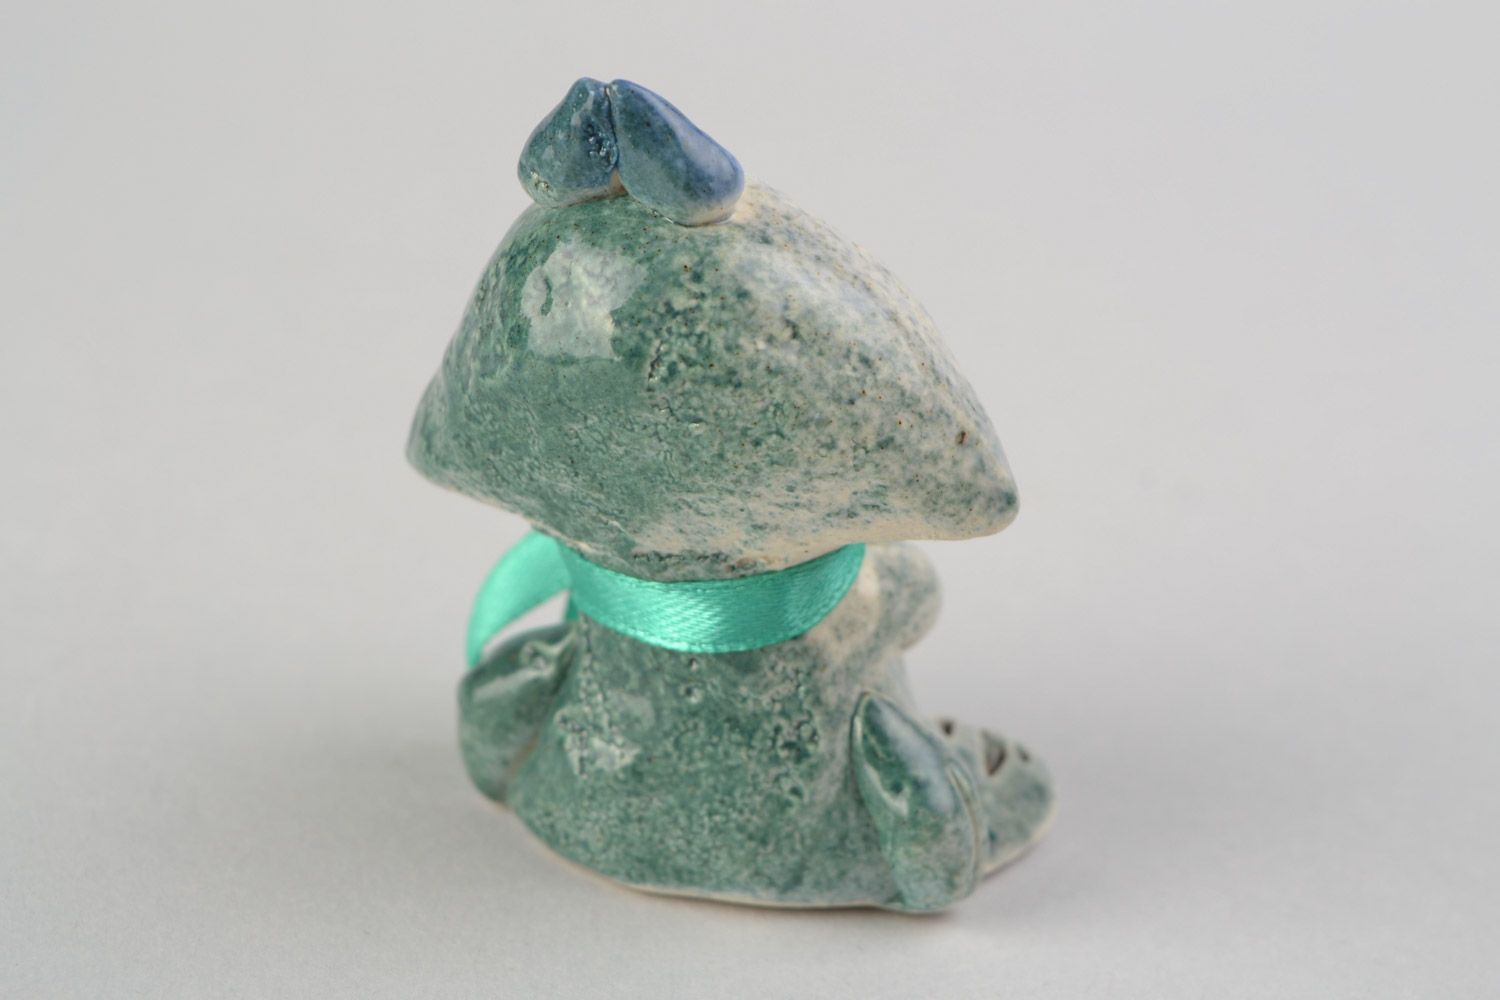 Авторская расписанная глазурью глиняная фигурка лягушки-мальчика ручной работы фото 5